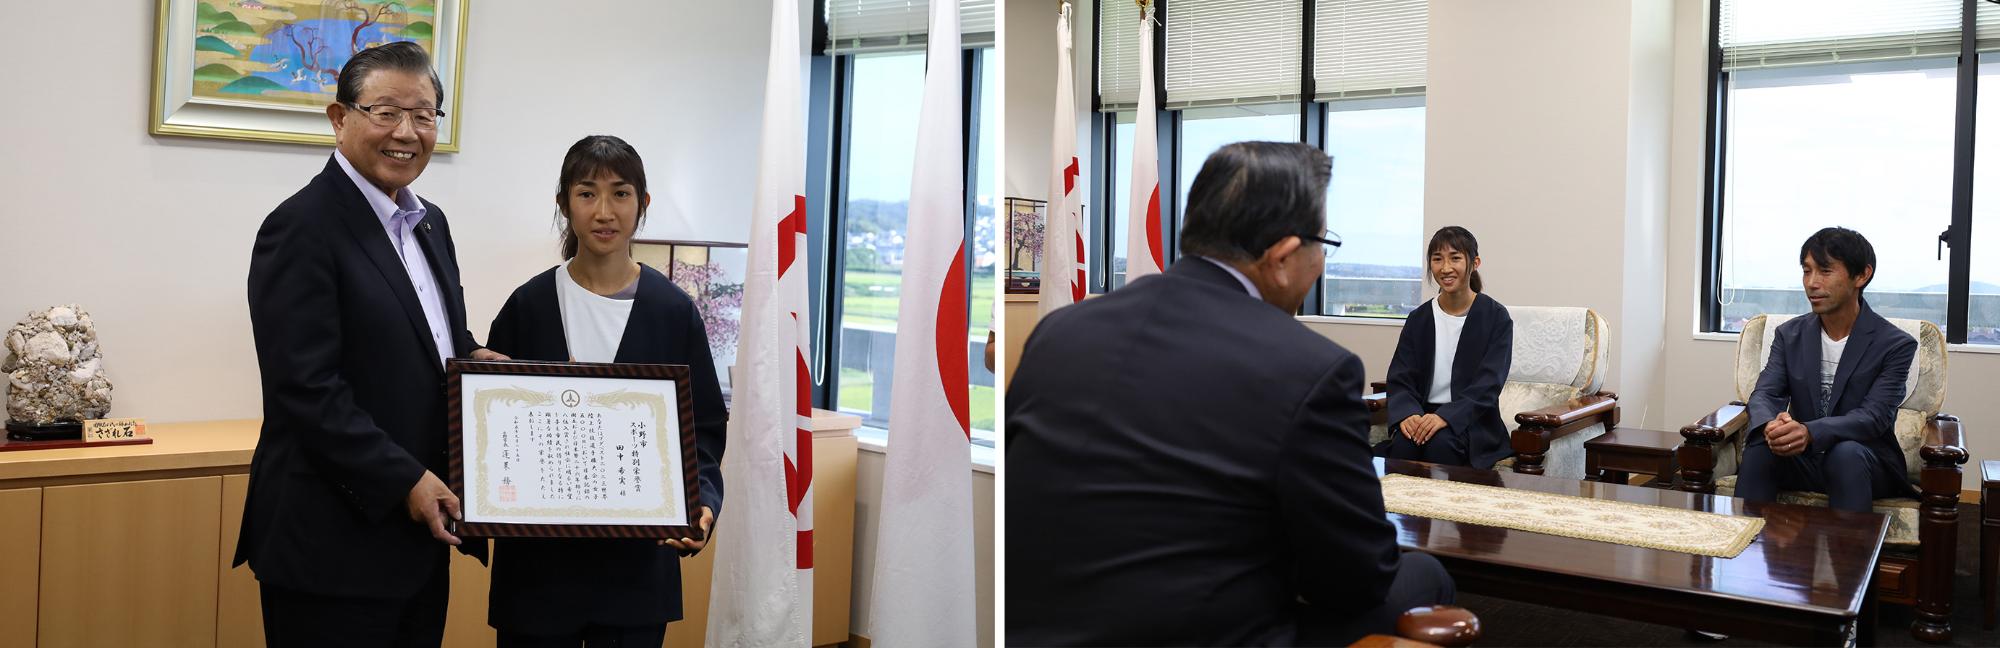 田中希実選手が小野市長へ表敬訪問された際の写真